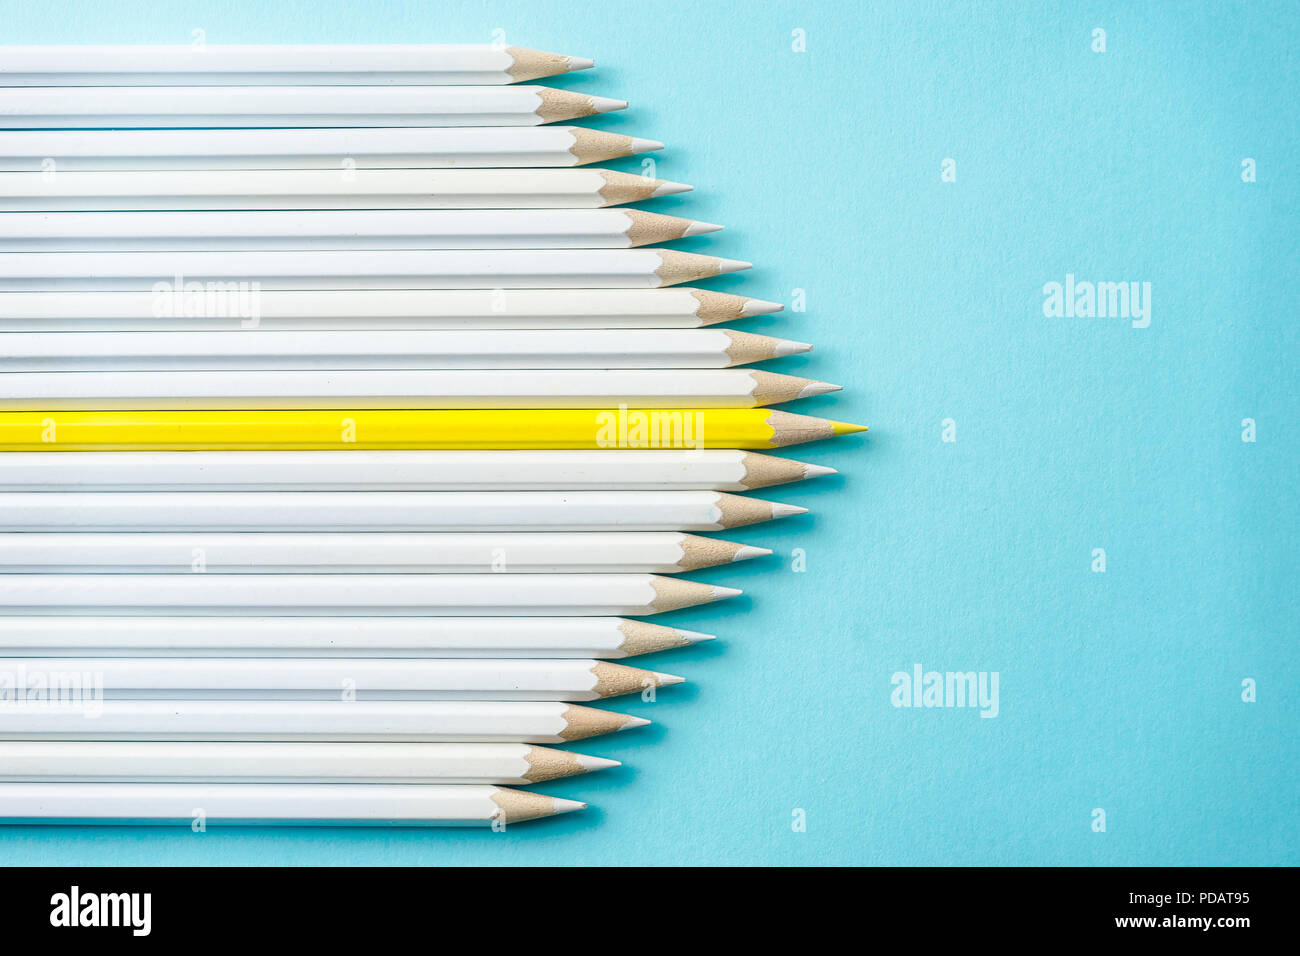 Il concetto di business - lotto di matite di colore bianco e una matita colorata su carta blu sullo sfondo. È il simbolo della leadership, il lavoro di squadra, uniti e comunicazione. Foto Stock